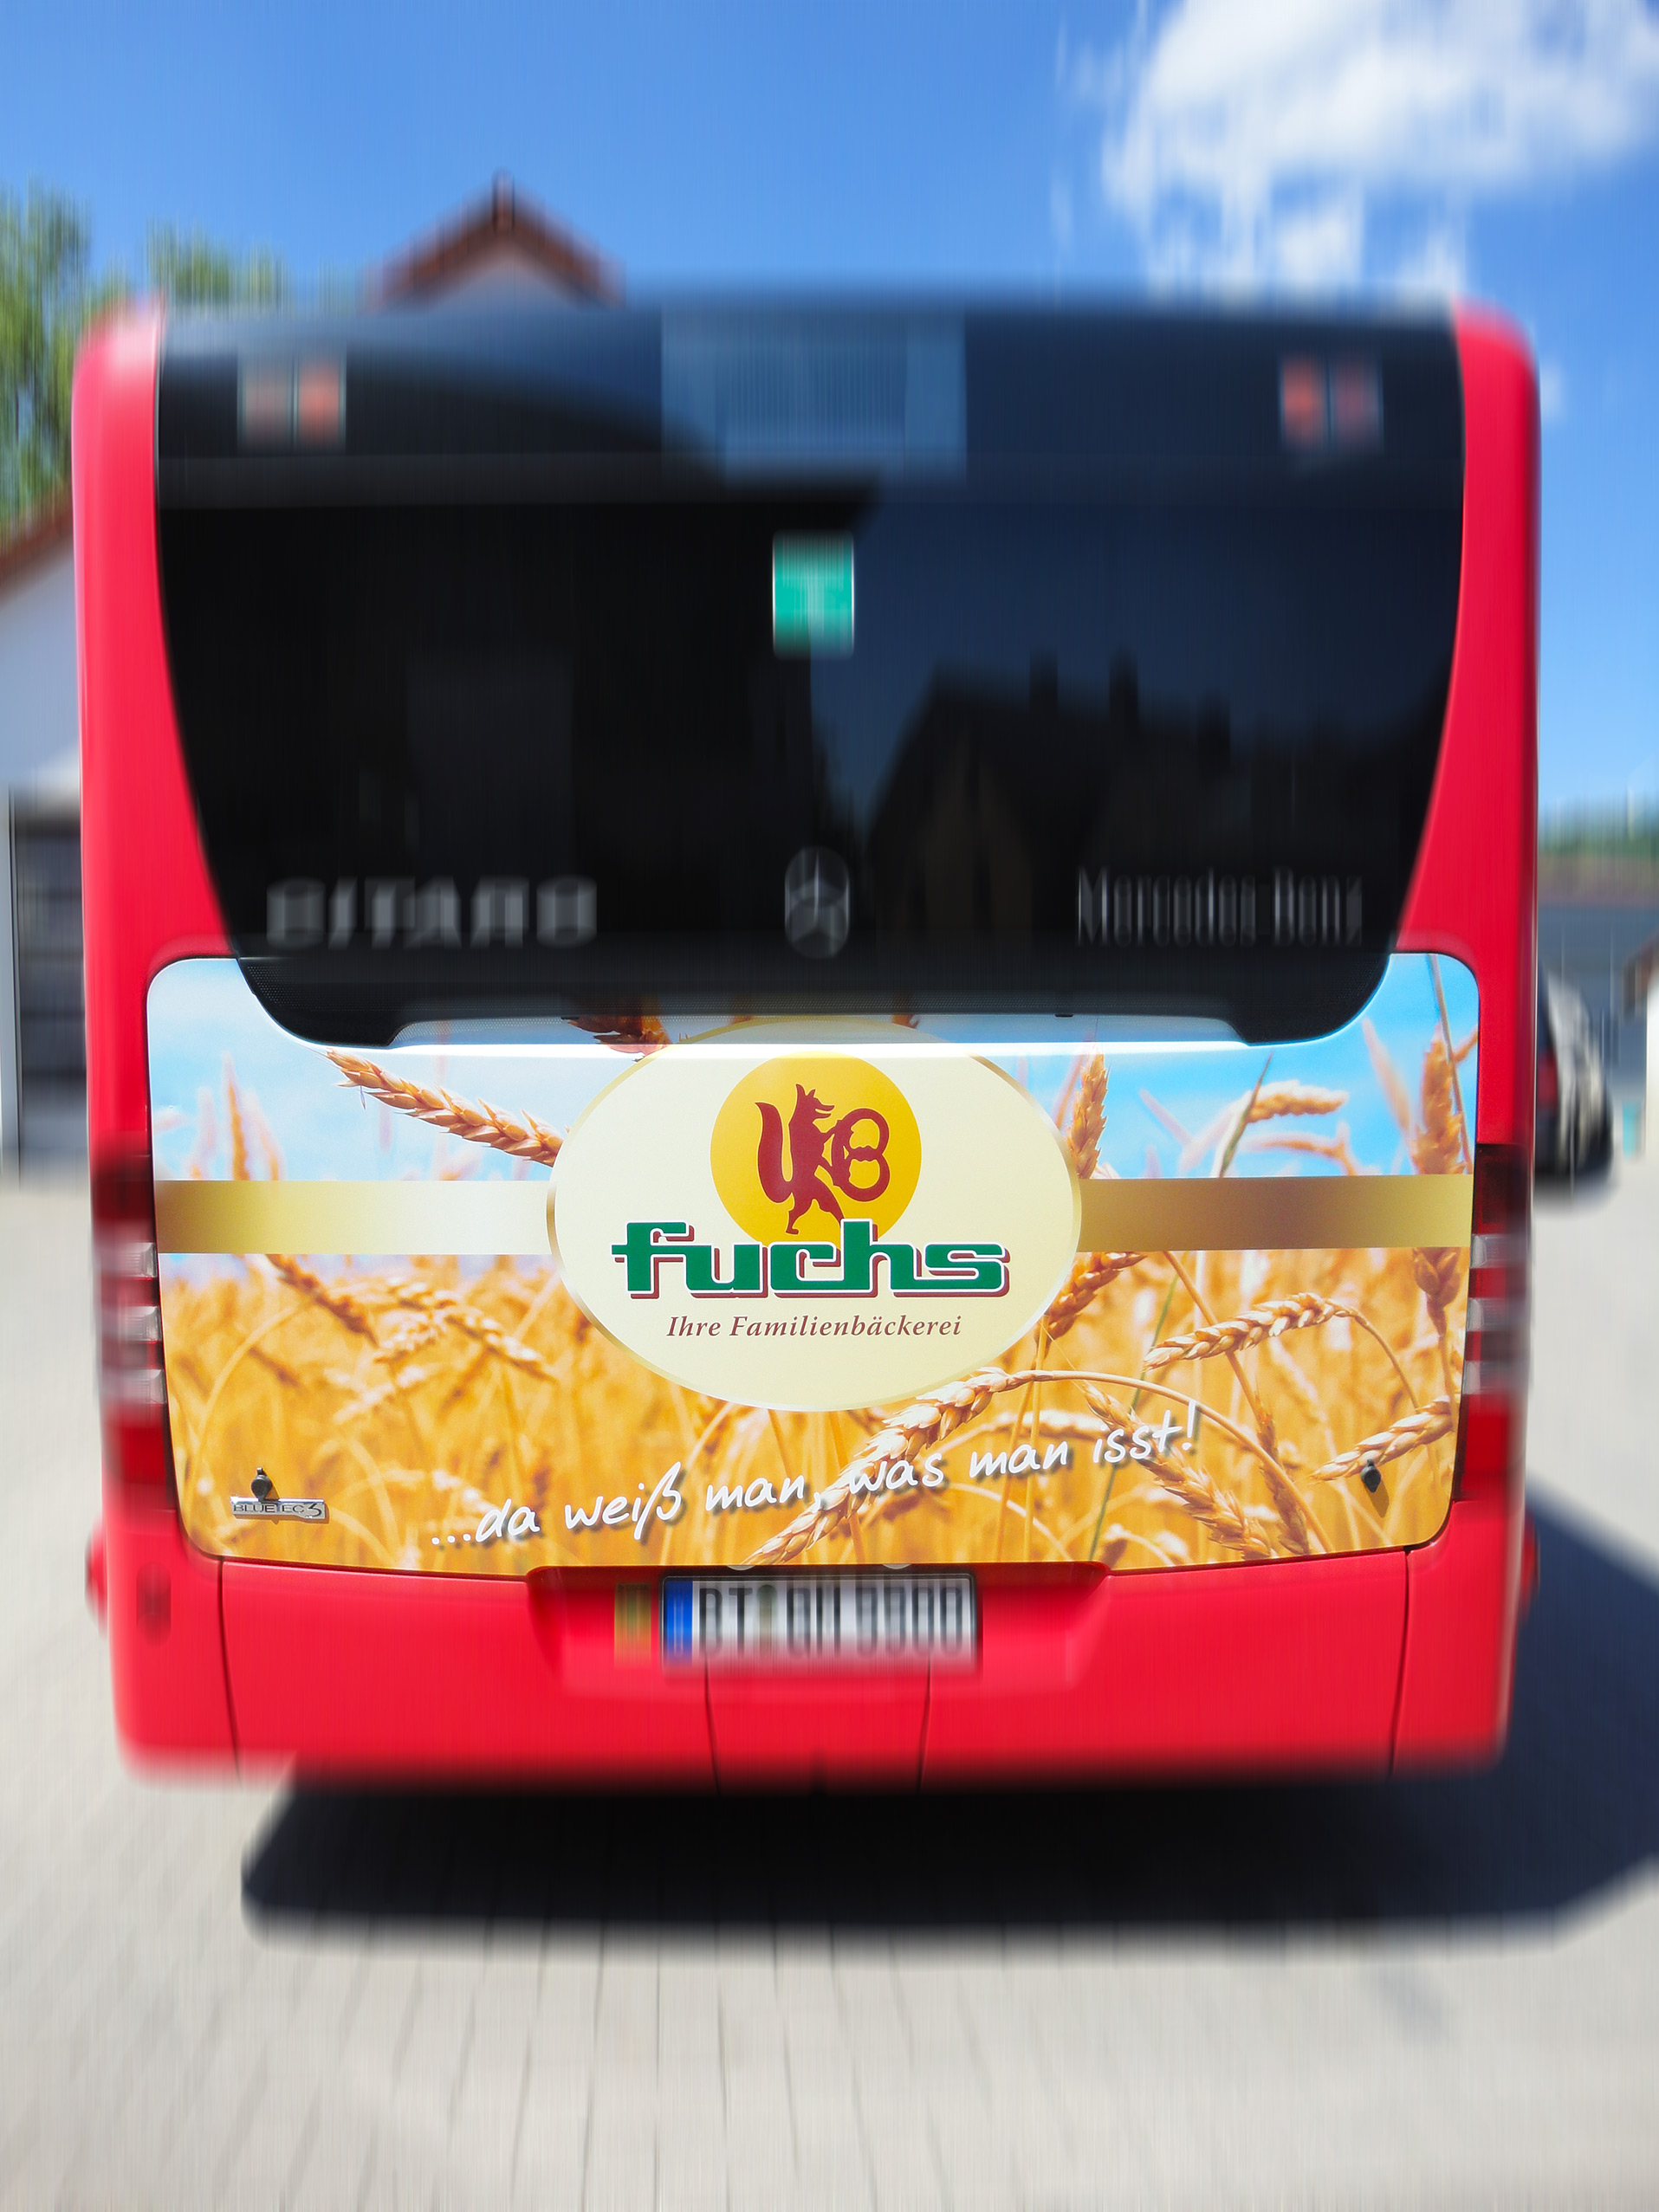 Buswerbung - Bäckerei Fuchs - Heck - Bayreuth